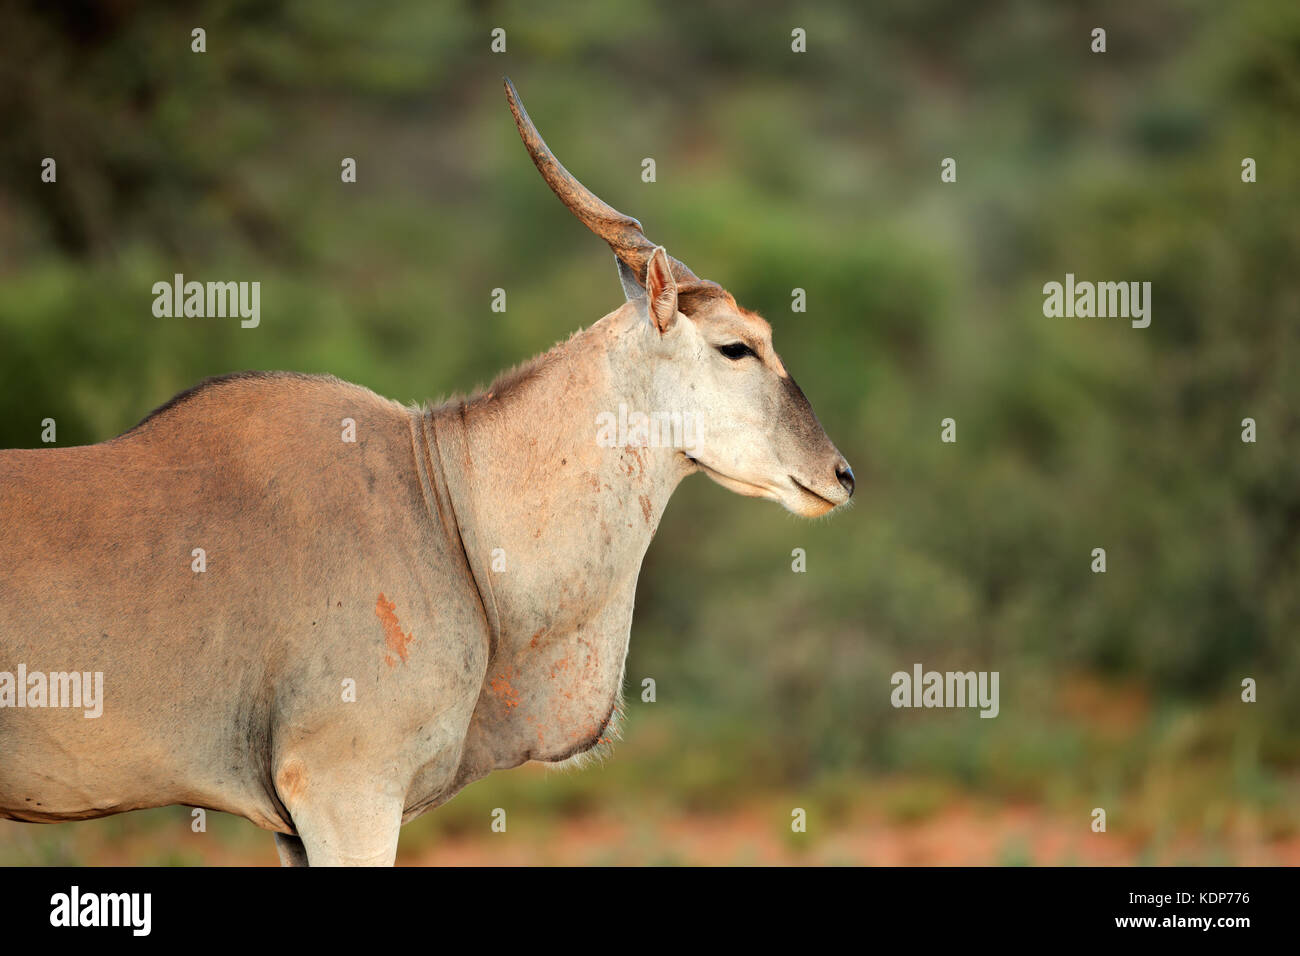 Portrait of a large male eland antelope (Tragelaphus oryx), South Africa Stock Photo